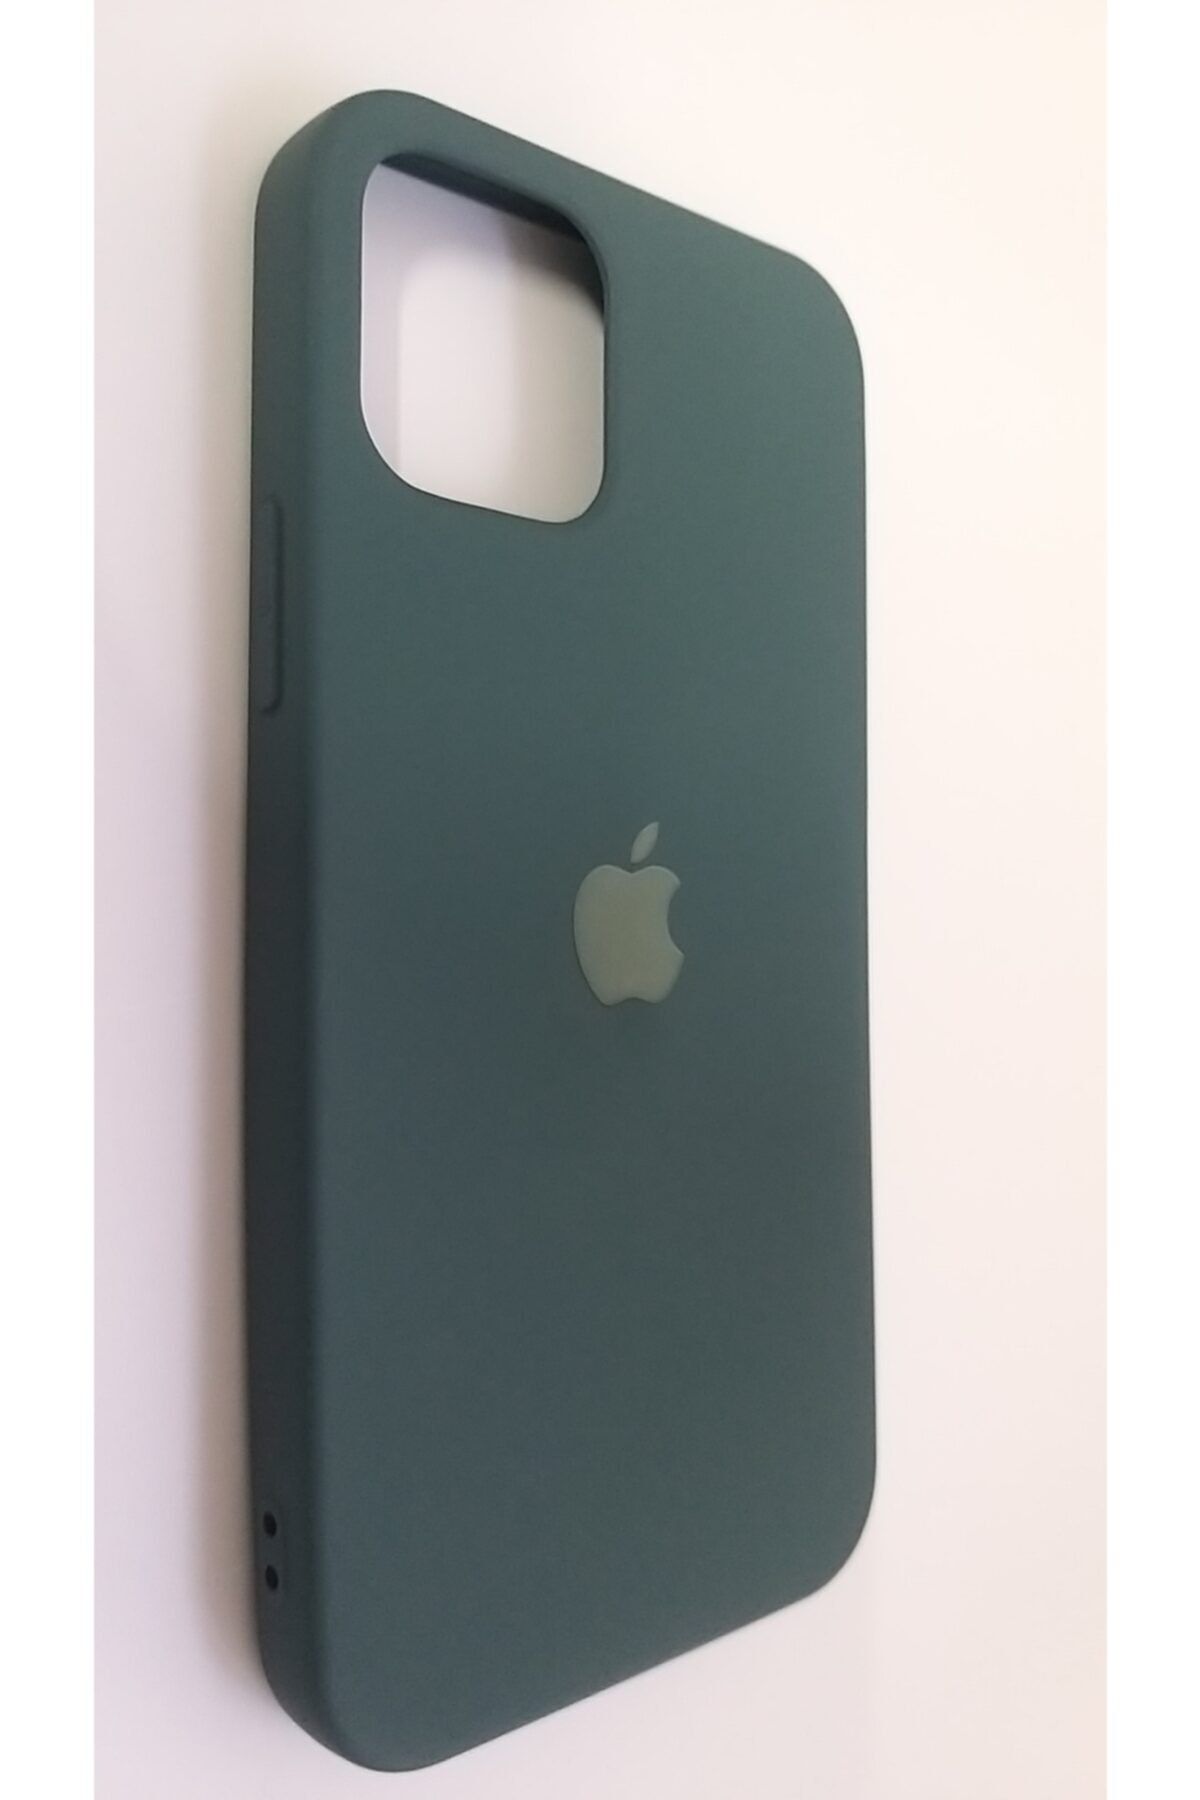 Pirok Store Iphone 12 Pro 6.1 Haki Yeşil Lansman Içi Kadife Logolu Silikon Kılıf